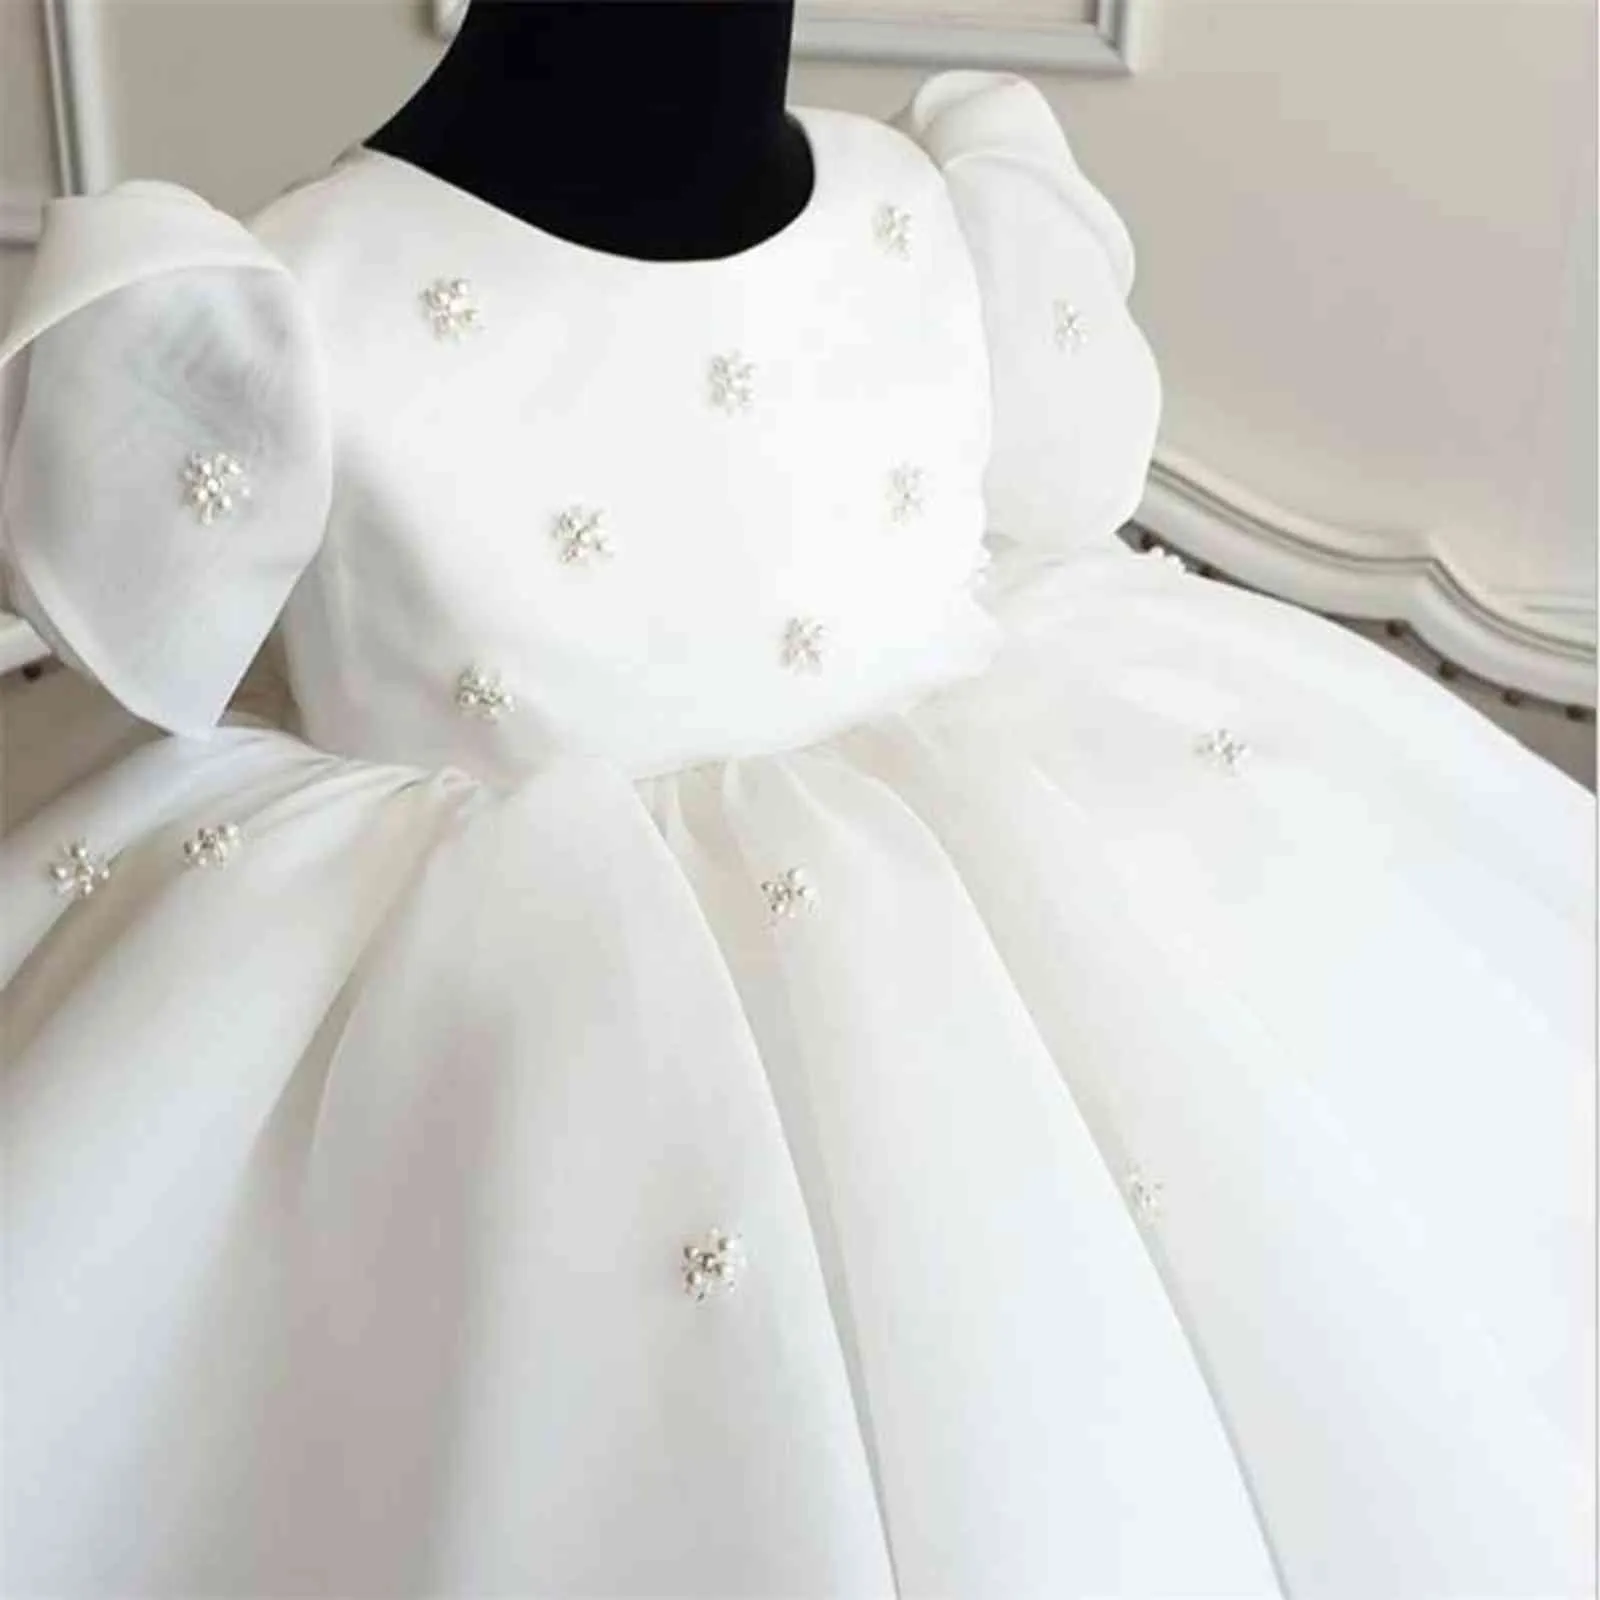 Bébé 1er anniversaire fête robe de mariée perle princesse filles robe dentelle enfants robes pour fille bébé baptême robe adolescente robe de bal G1129